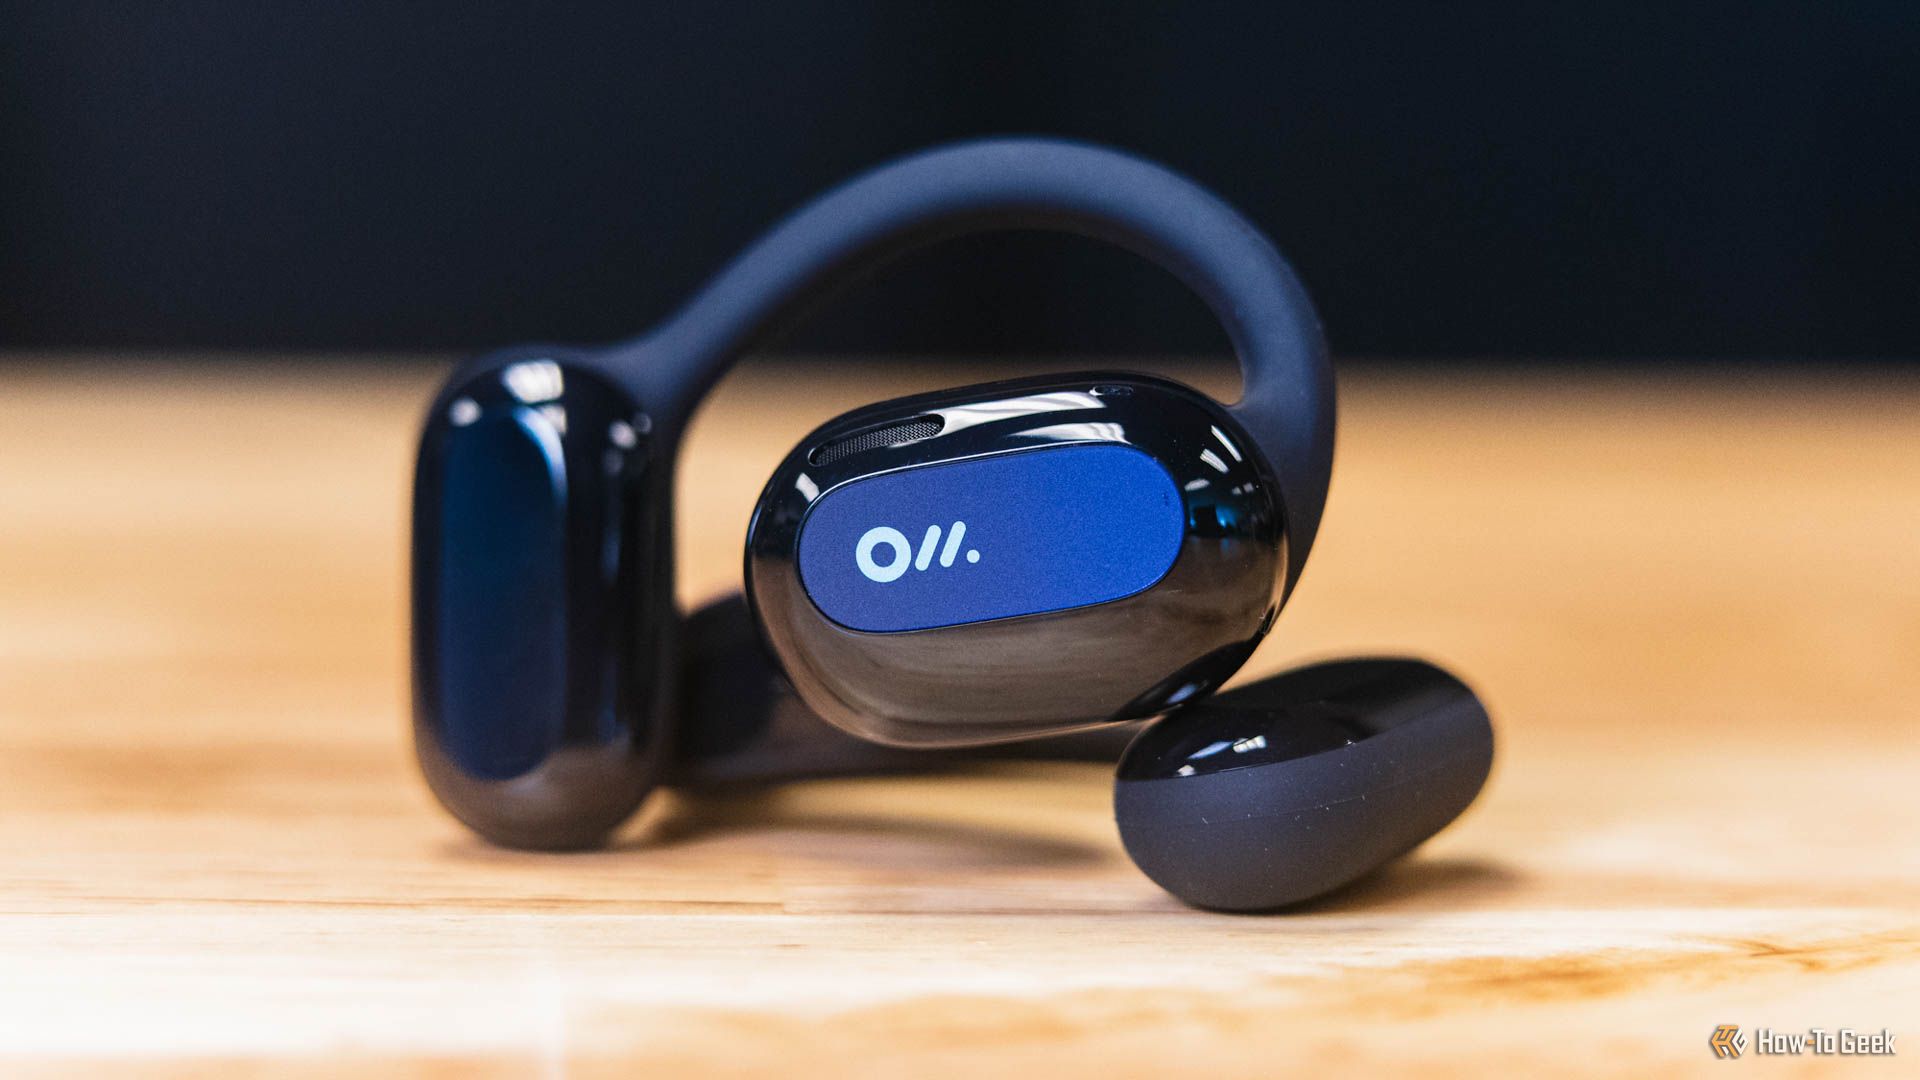 The Oladance Open-Ear Headphones on a wooden table.